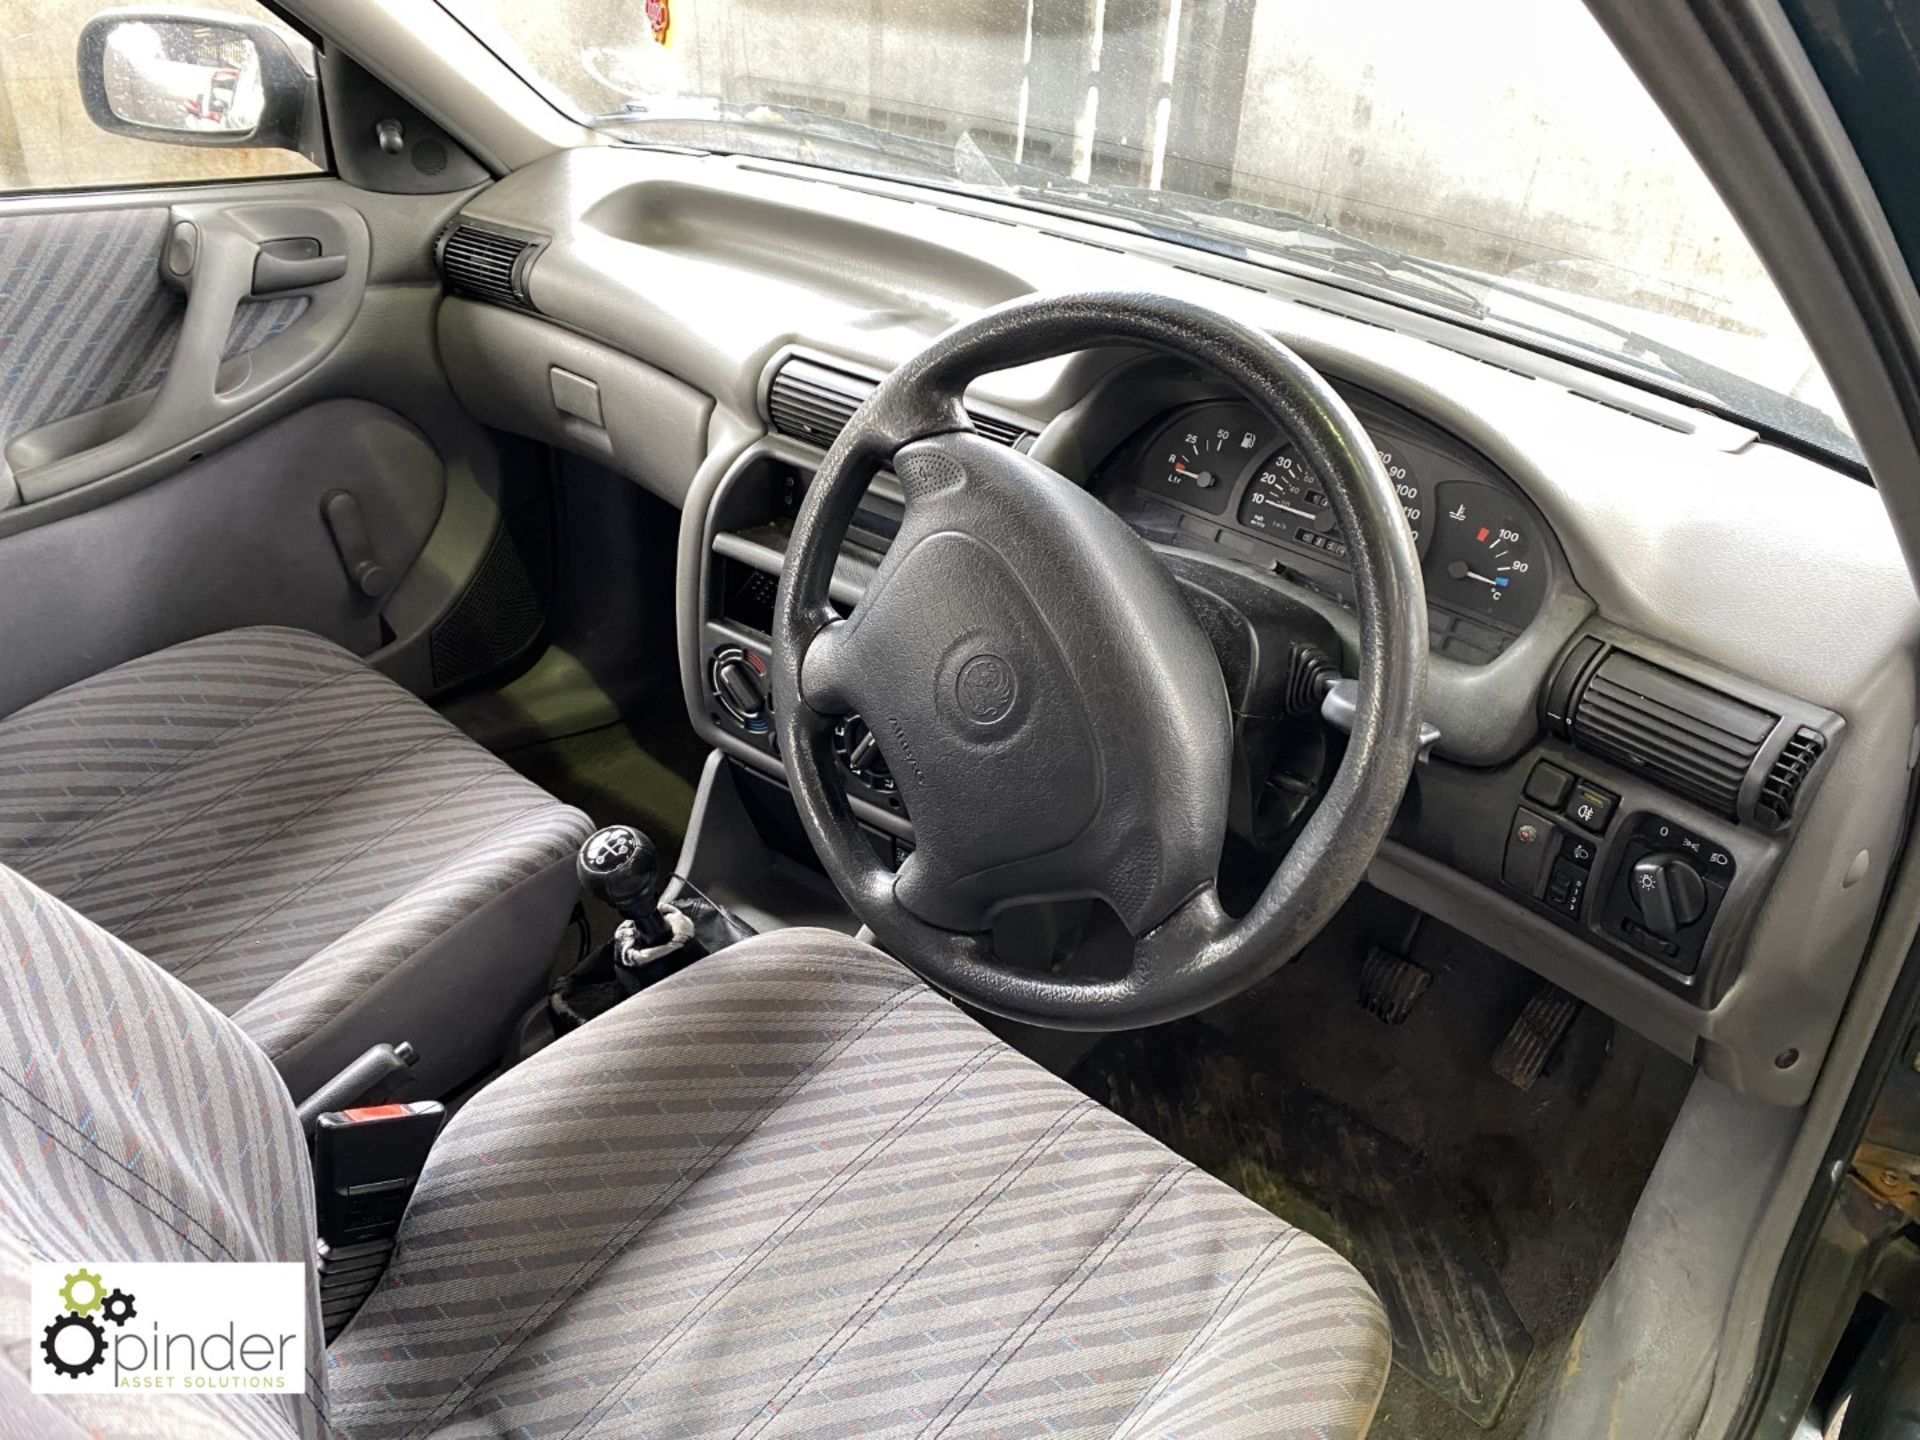 Vauxhall Astra Merit 1.6 petrol 5-door Hatchback, registration: R655 EHL, date of registration: 26 - Image 7 of 11